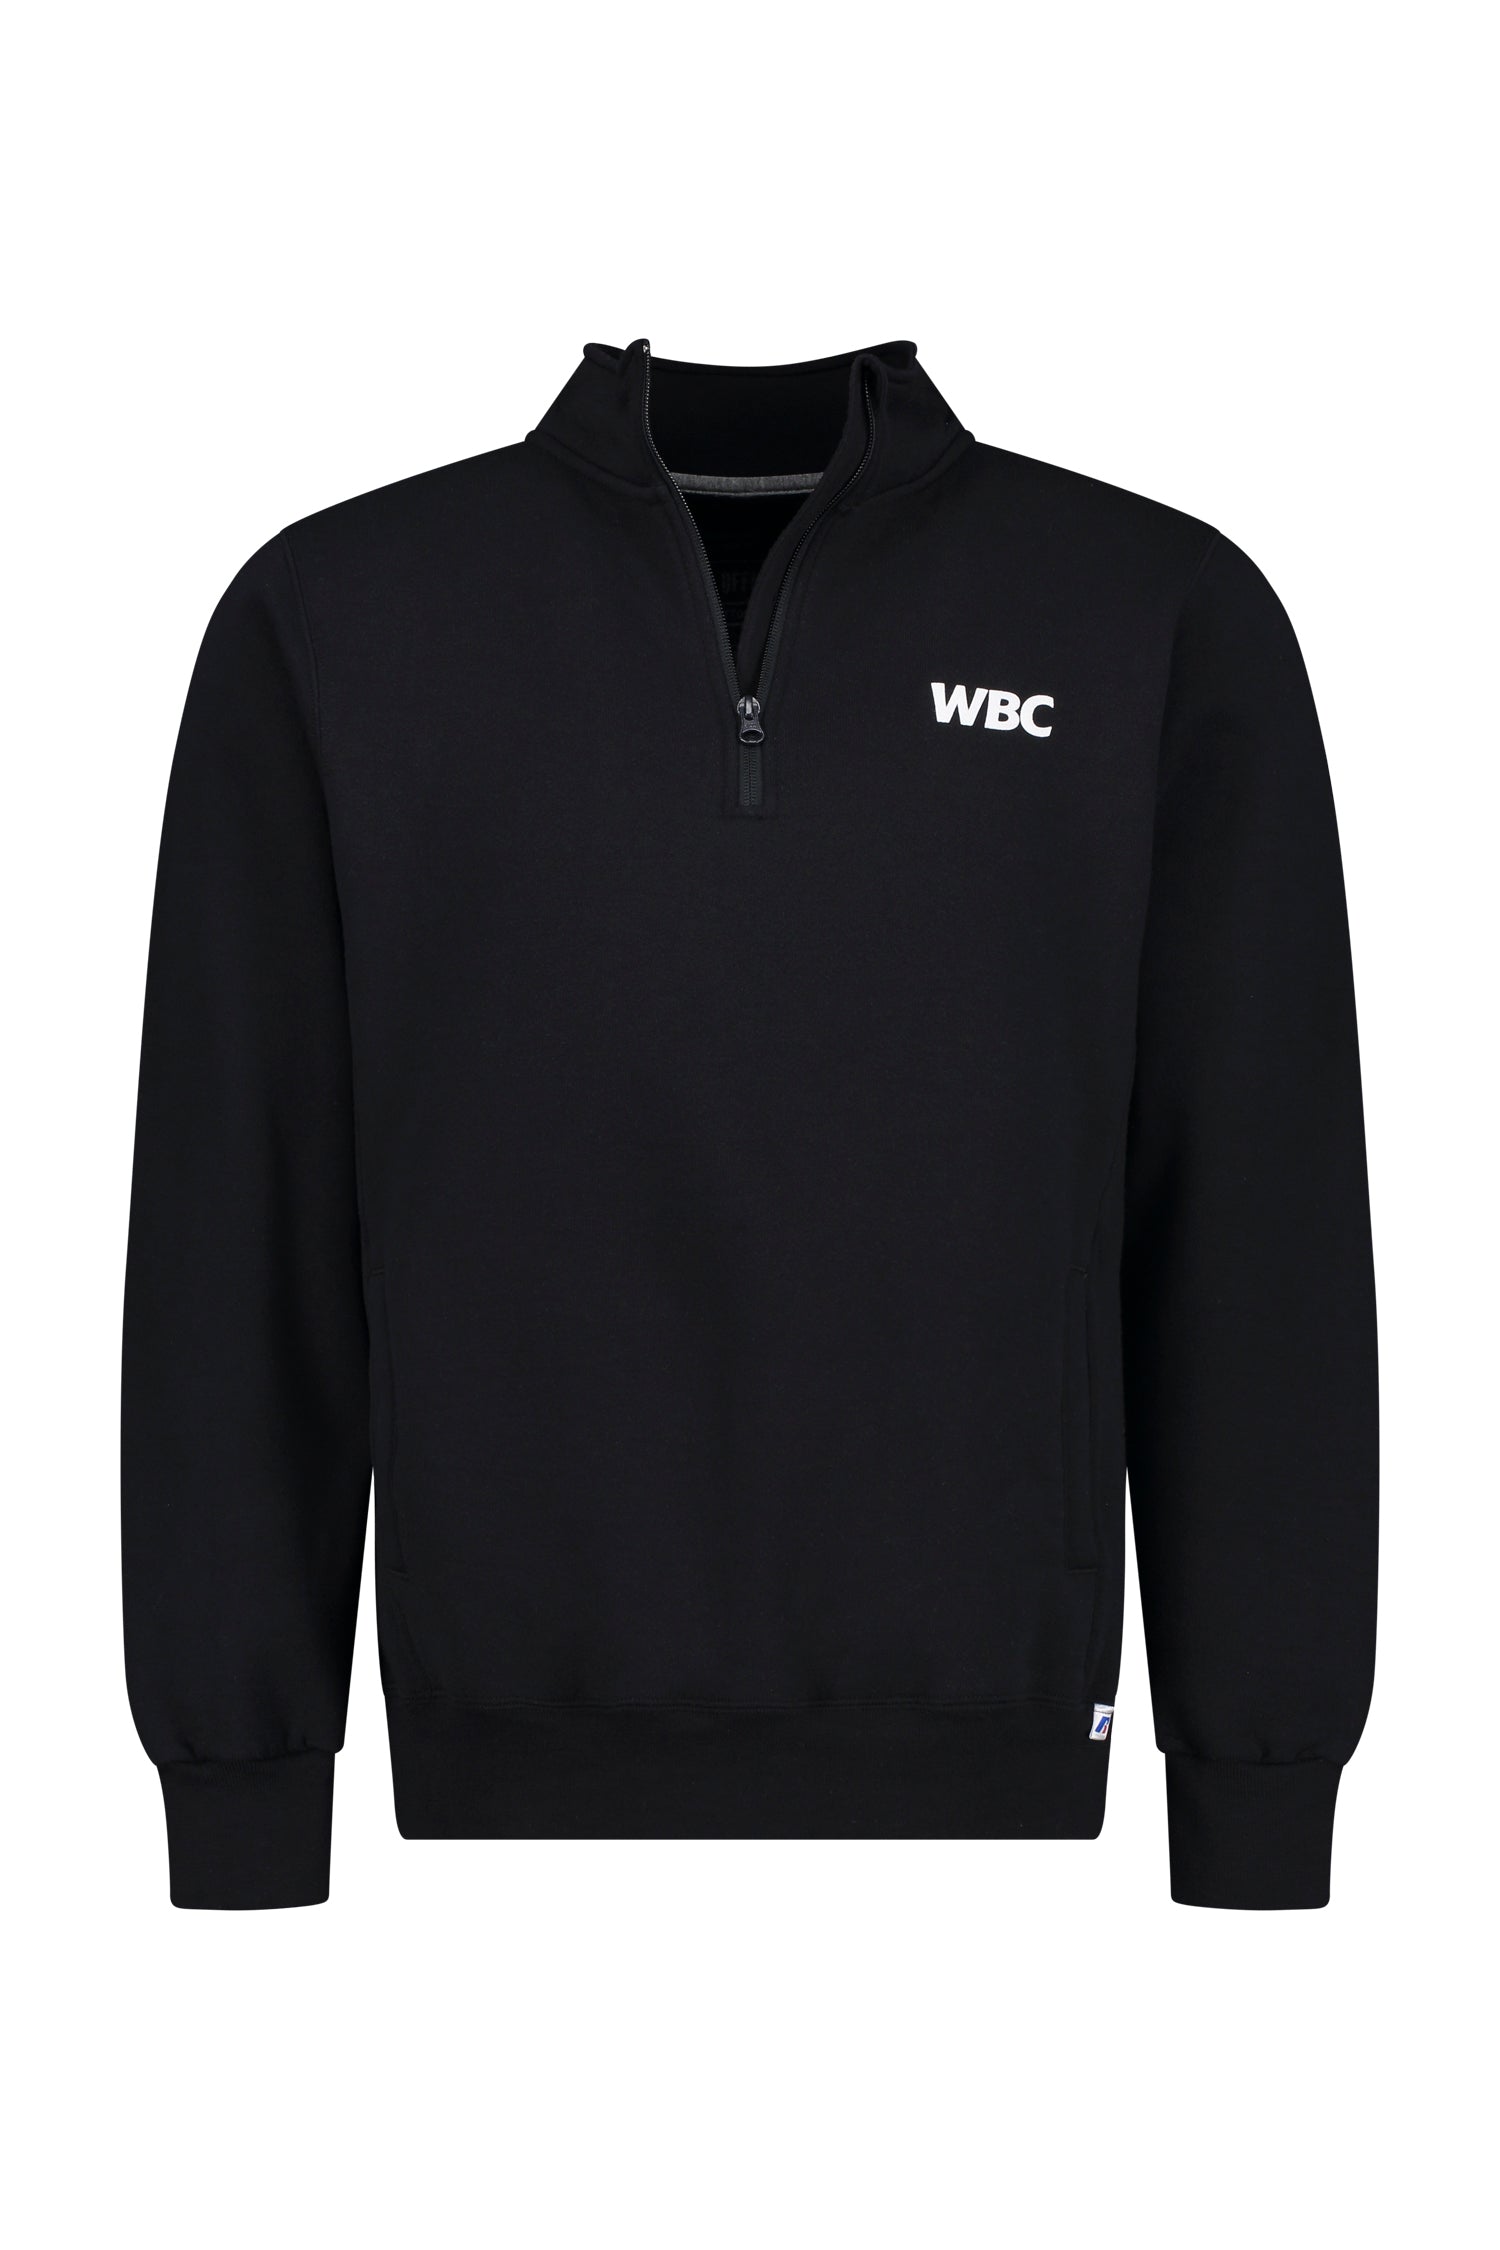 WBC Store World Champion Sweatshirt